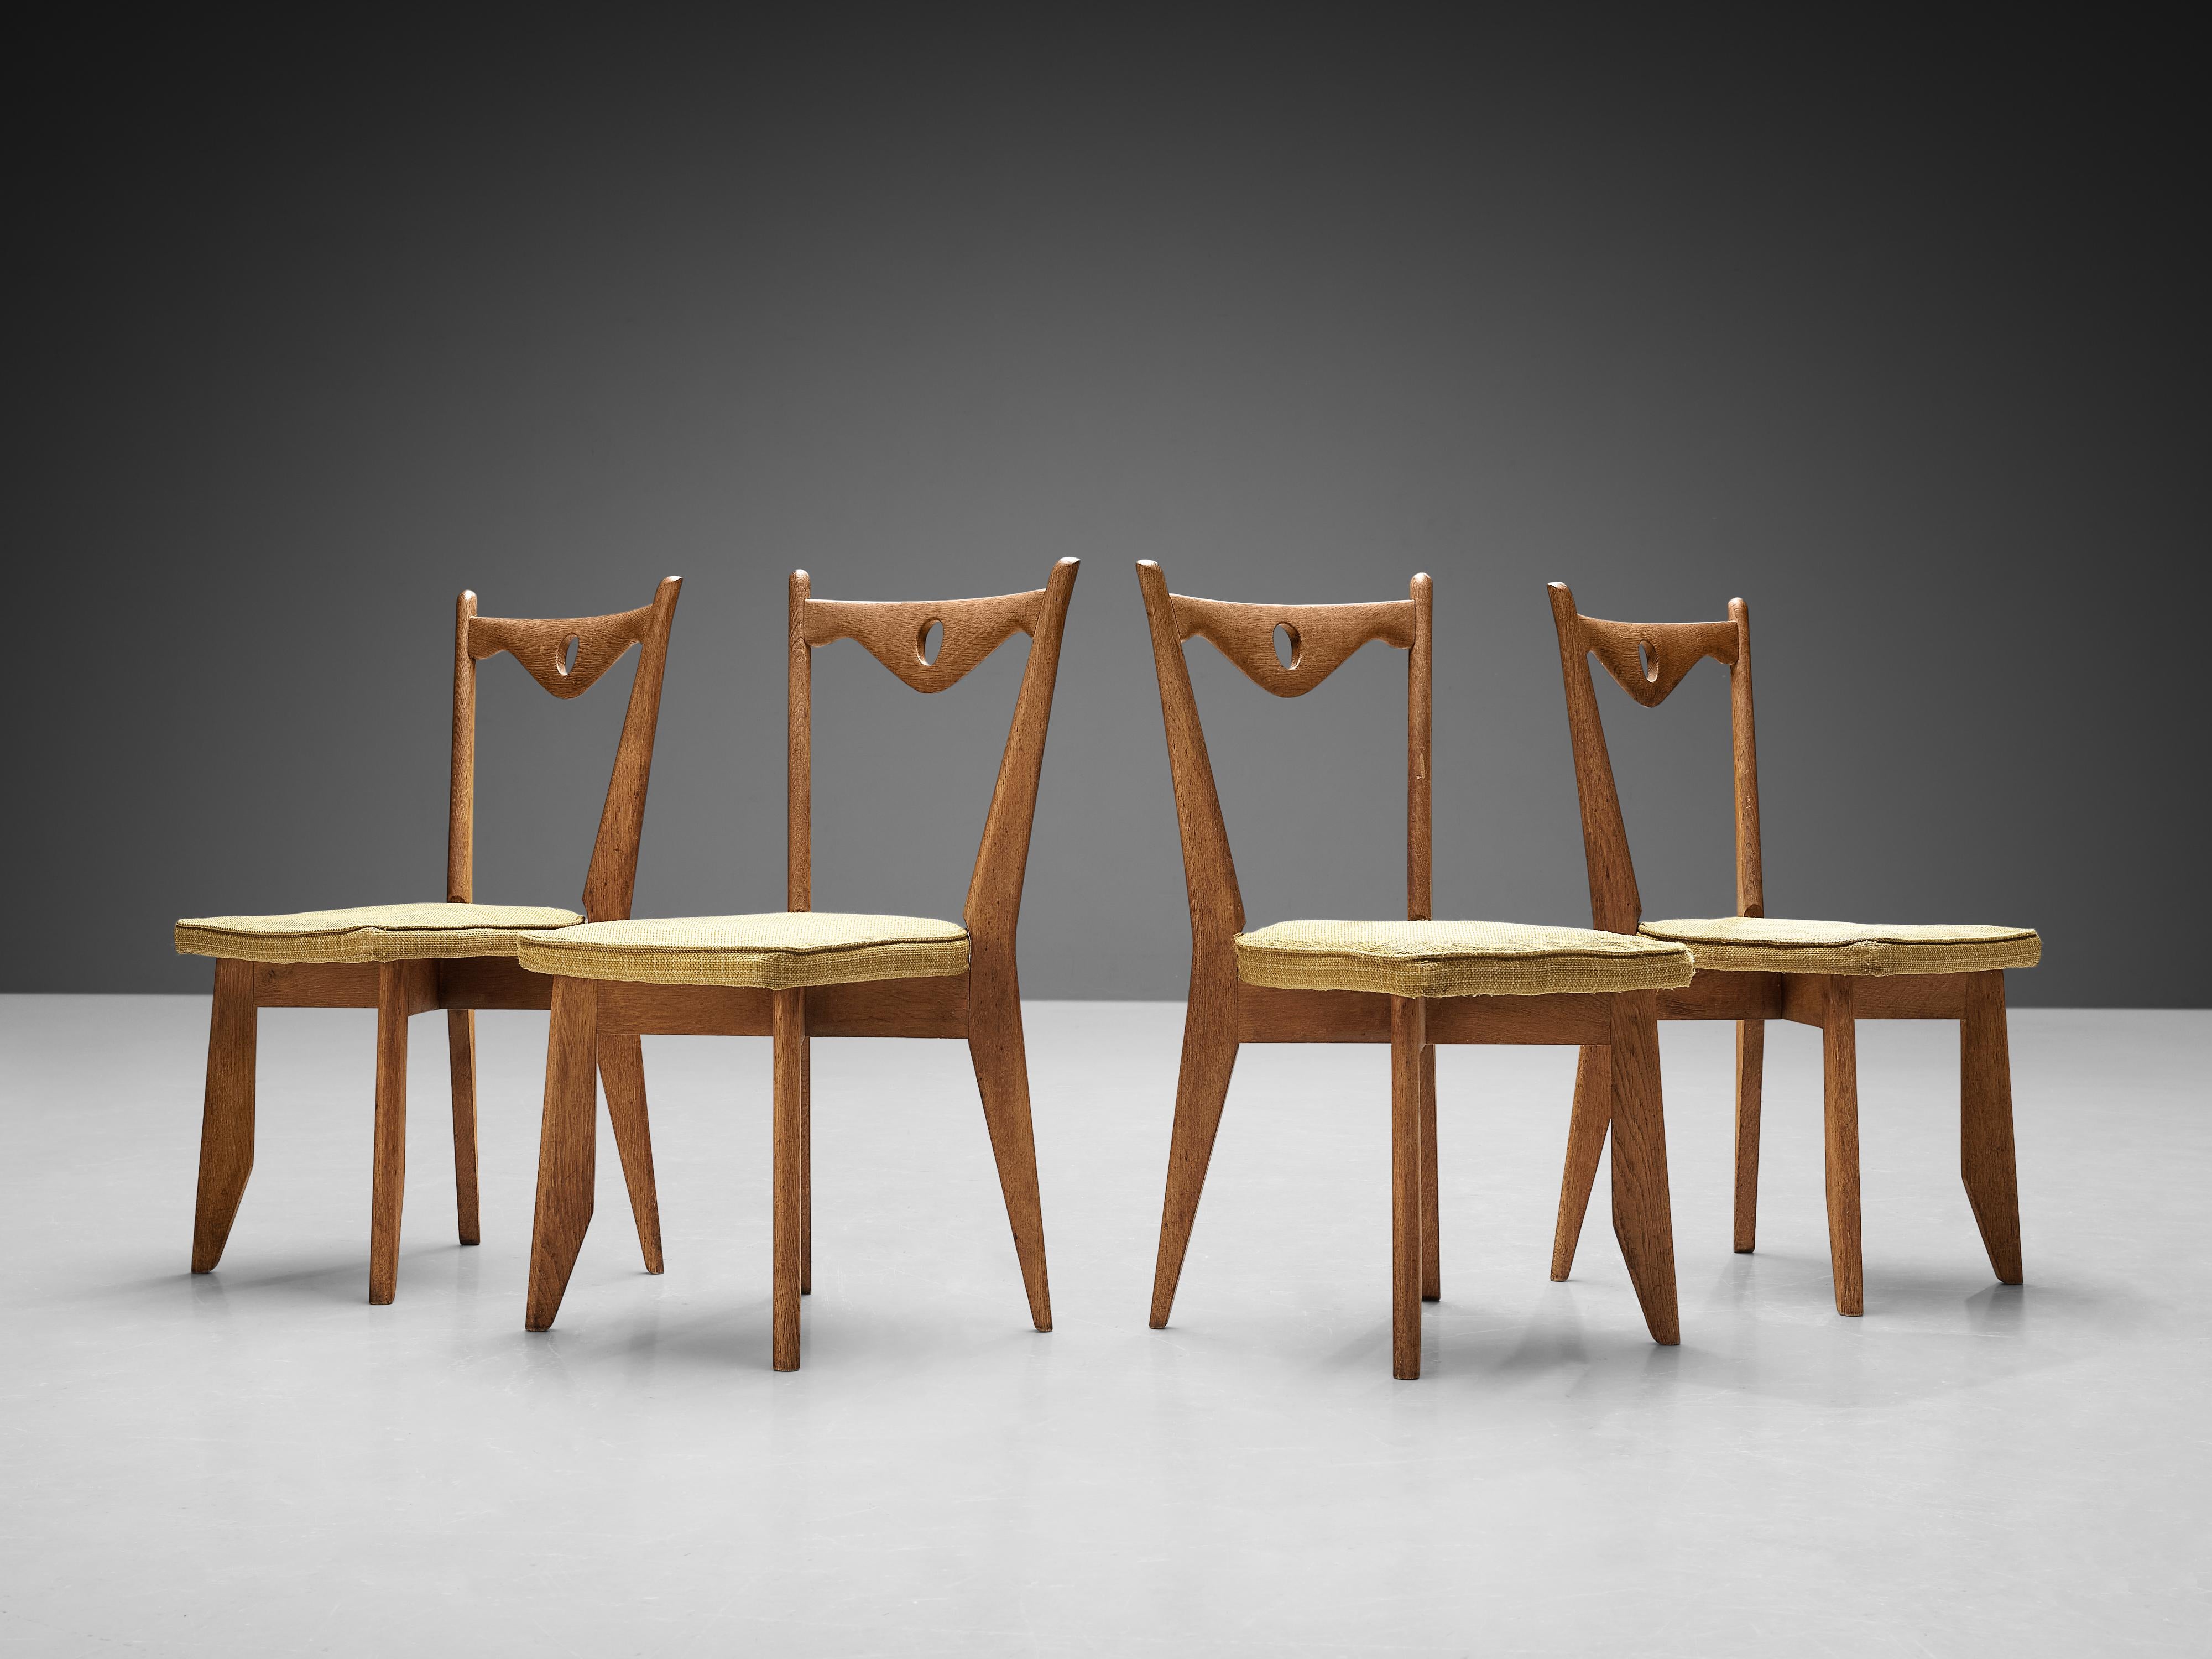 Guillerme et Chambron pour Votre Maison, ensemble de quatre chaises de salle à manger 'Thibault', chêne, laine, France, années 1960.

Ces chaises ont un cadre caractéristique avec des pieds effilés et un dossier sculptural avec un dossier festonné